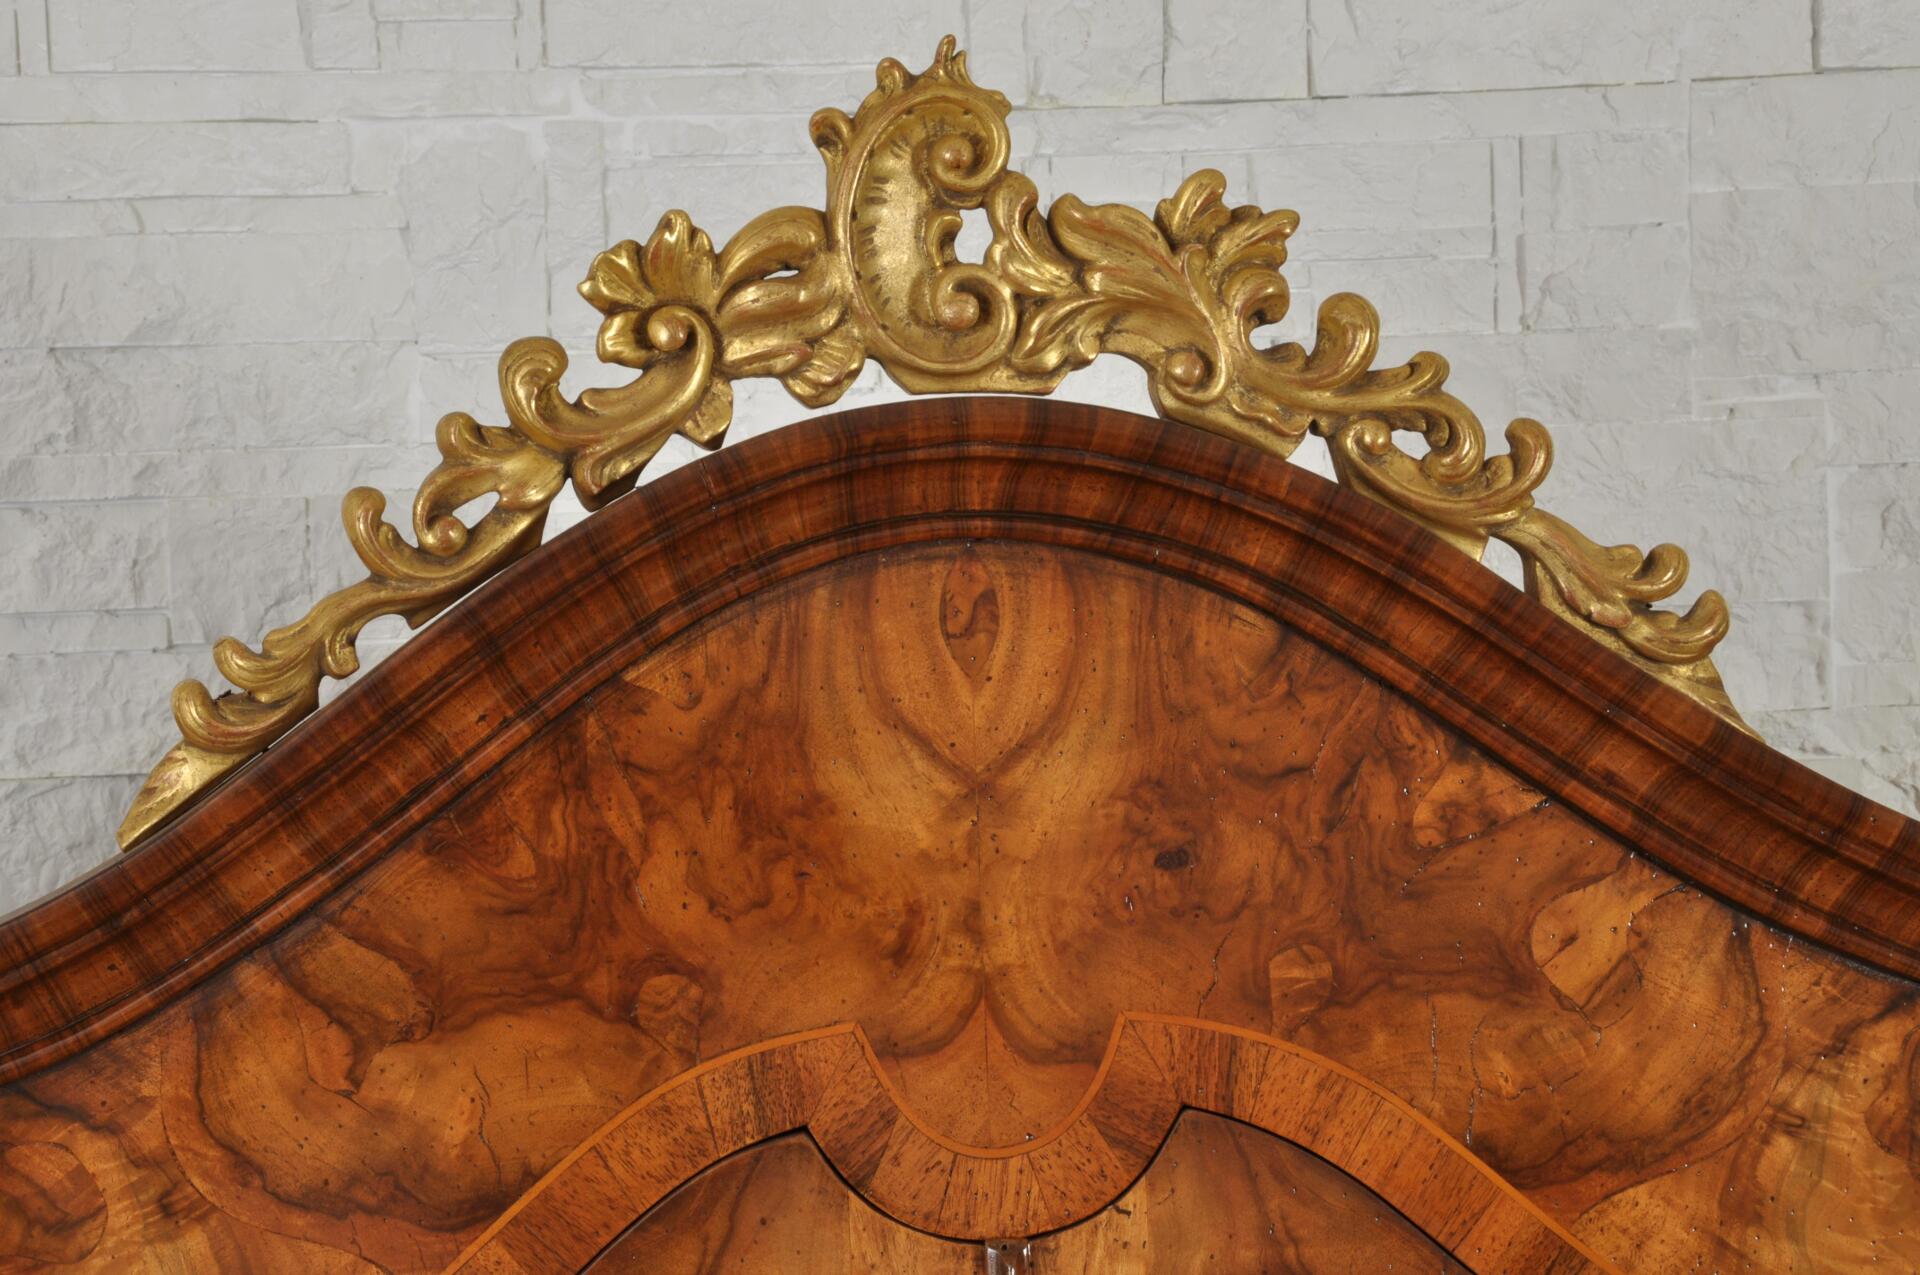 cornice della cimasa in essenza pregiata di noce con la ventura di testa, intaglio barocco scolpito a mano e dorato in foglia oro